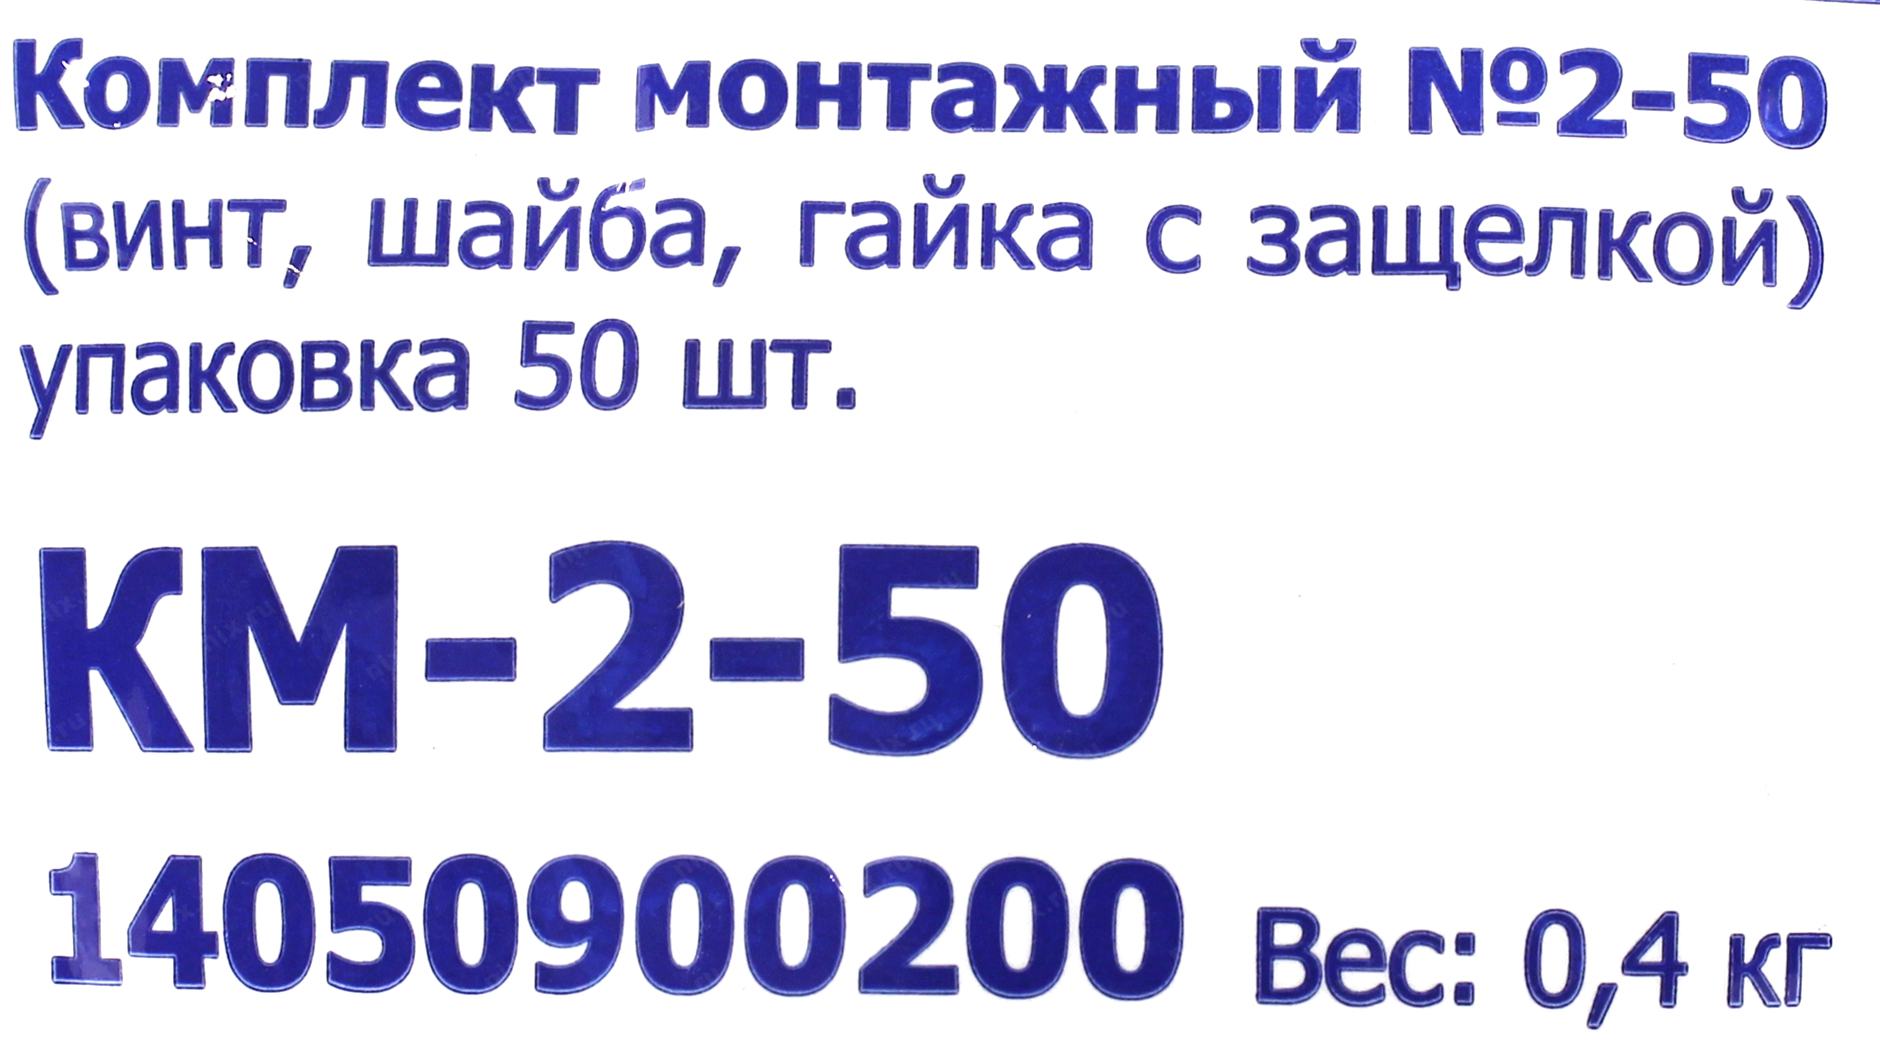 Комплект монтажный ЦМО км-2-50